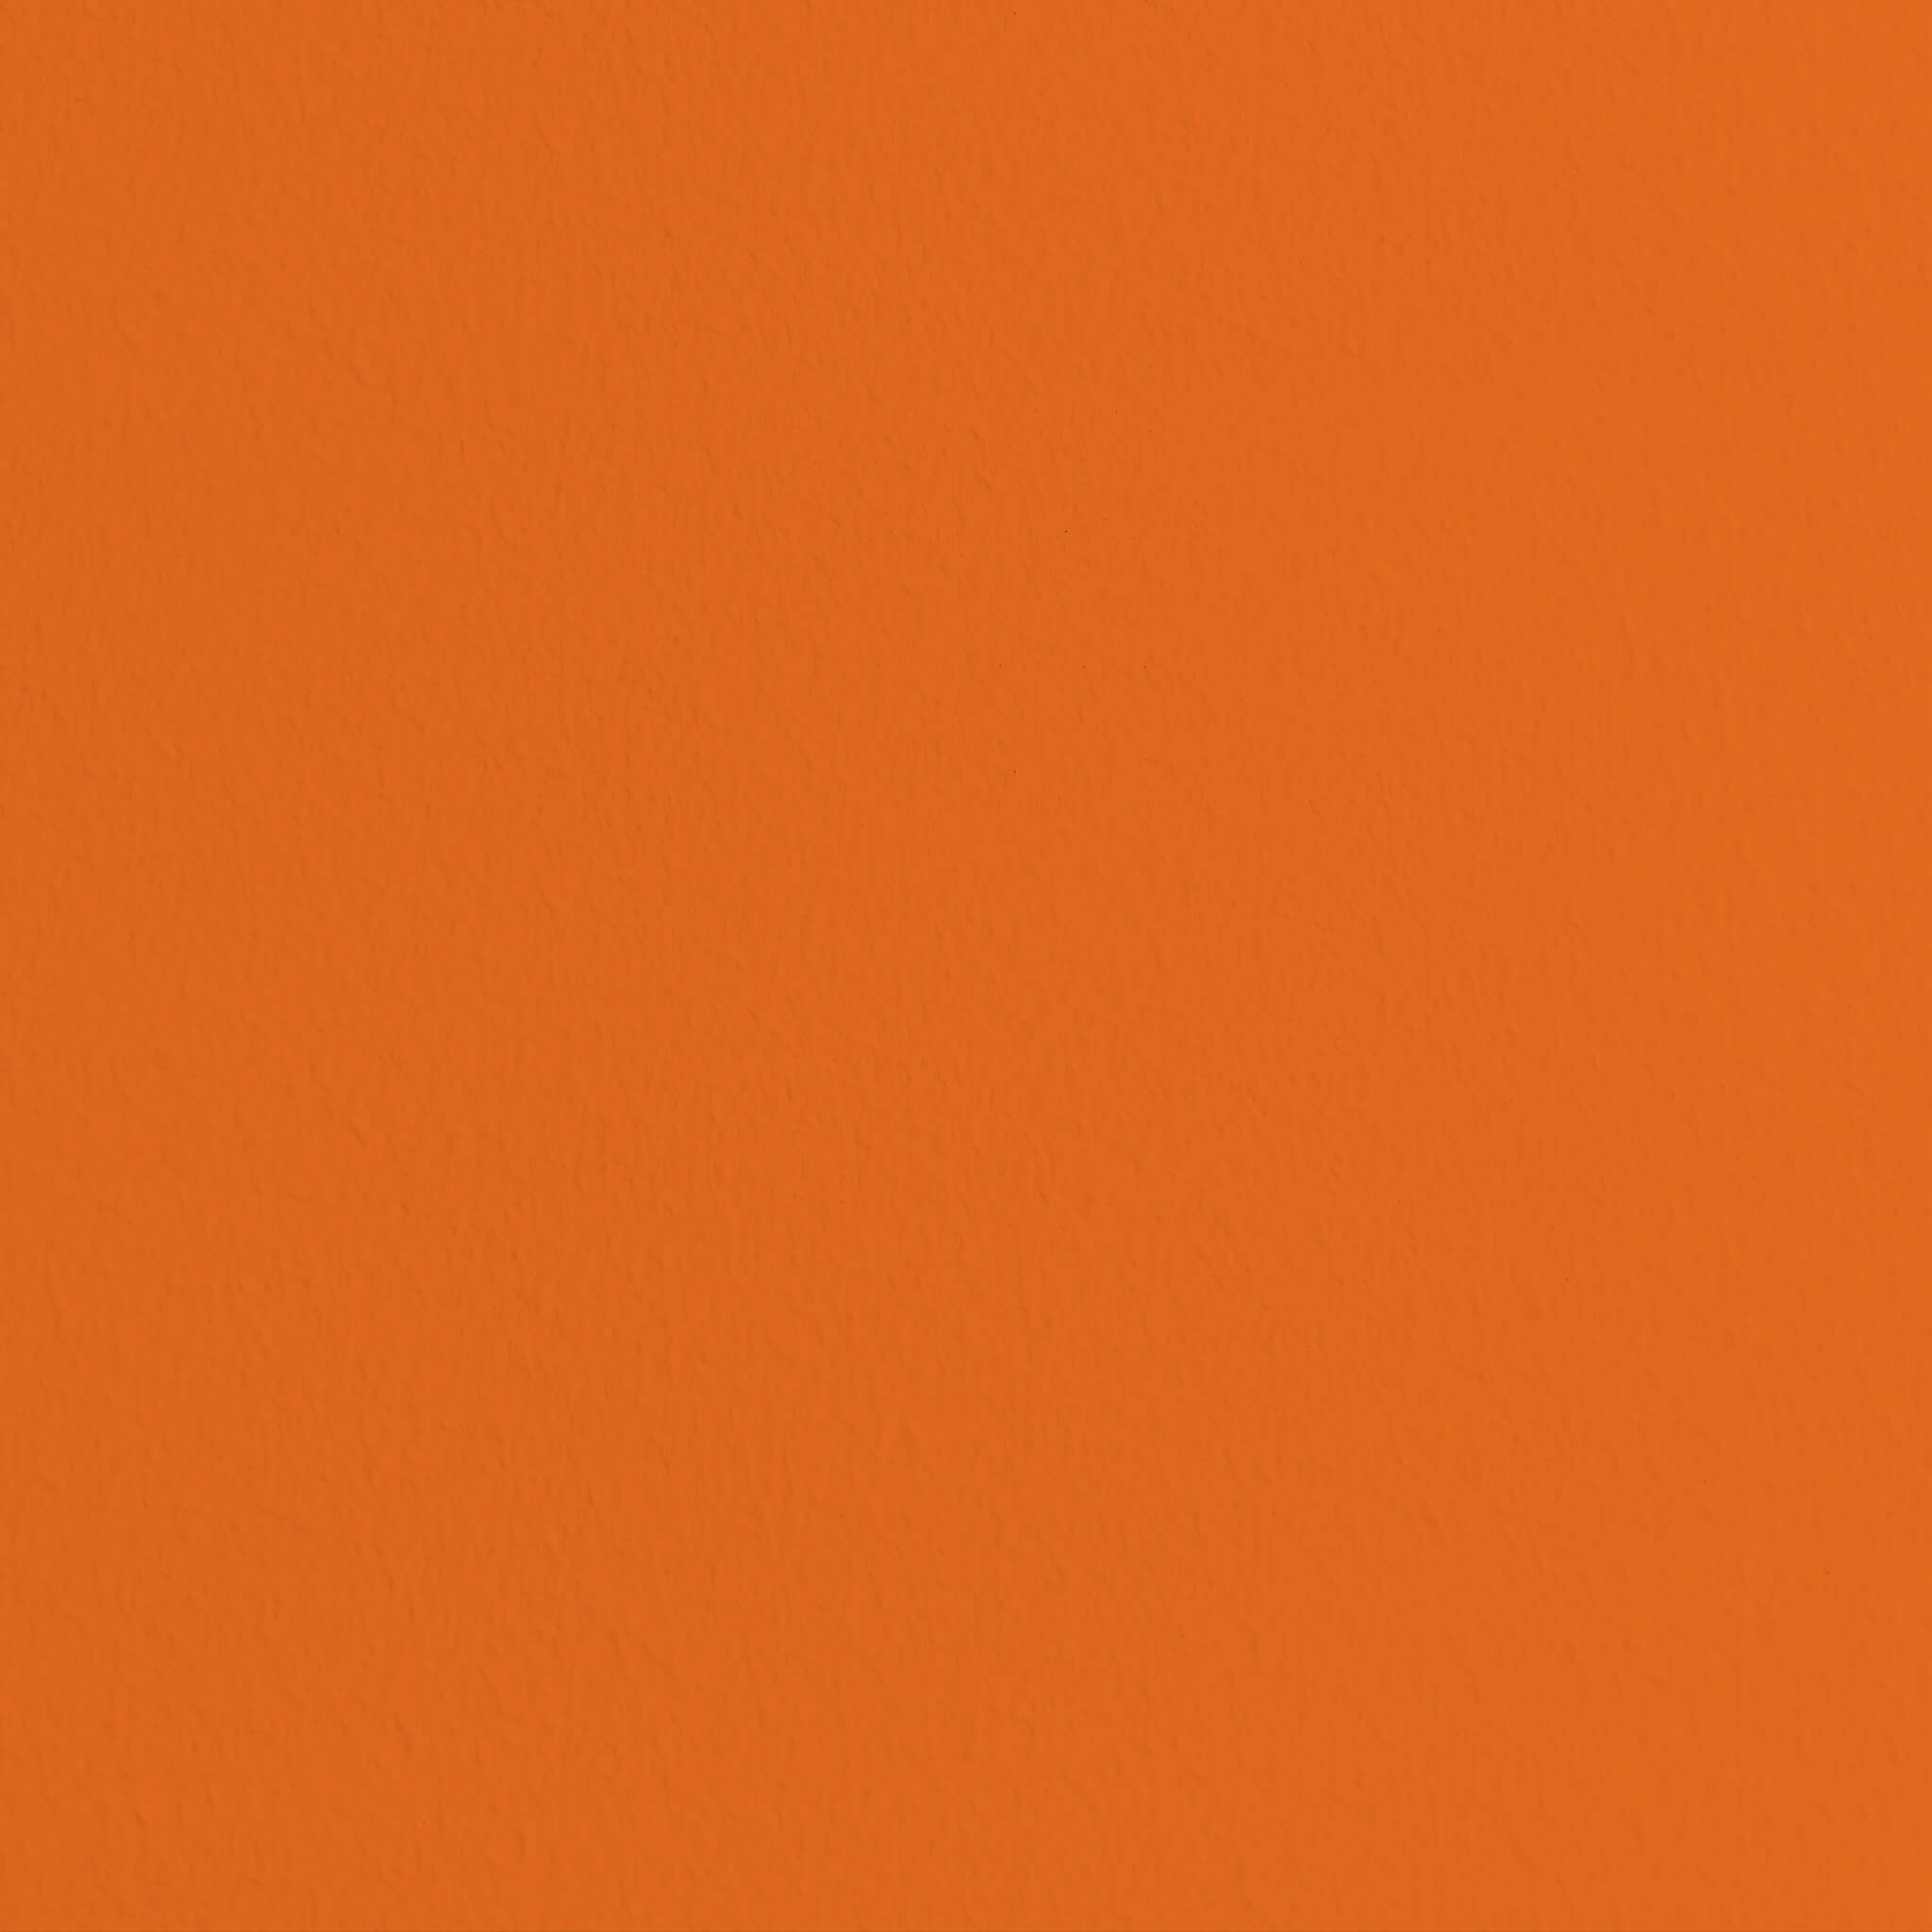 MissPompadour Orange mit Mandarine - Die Wertvolle 2.5L